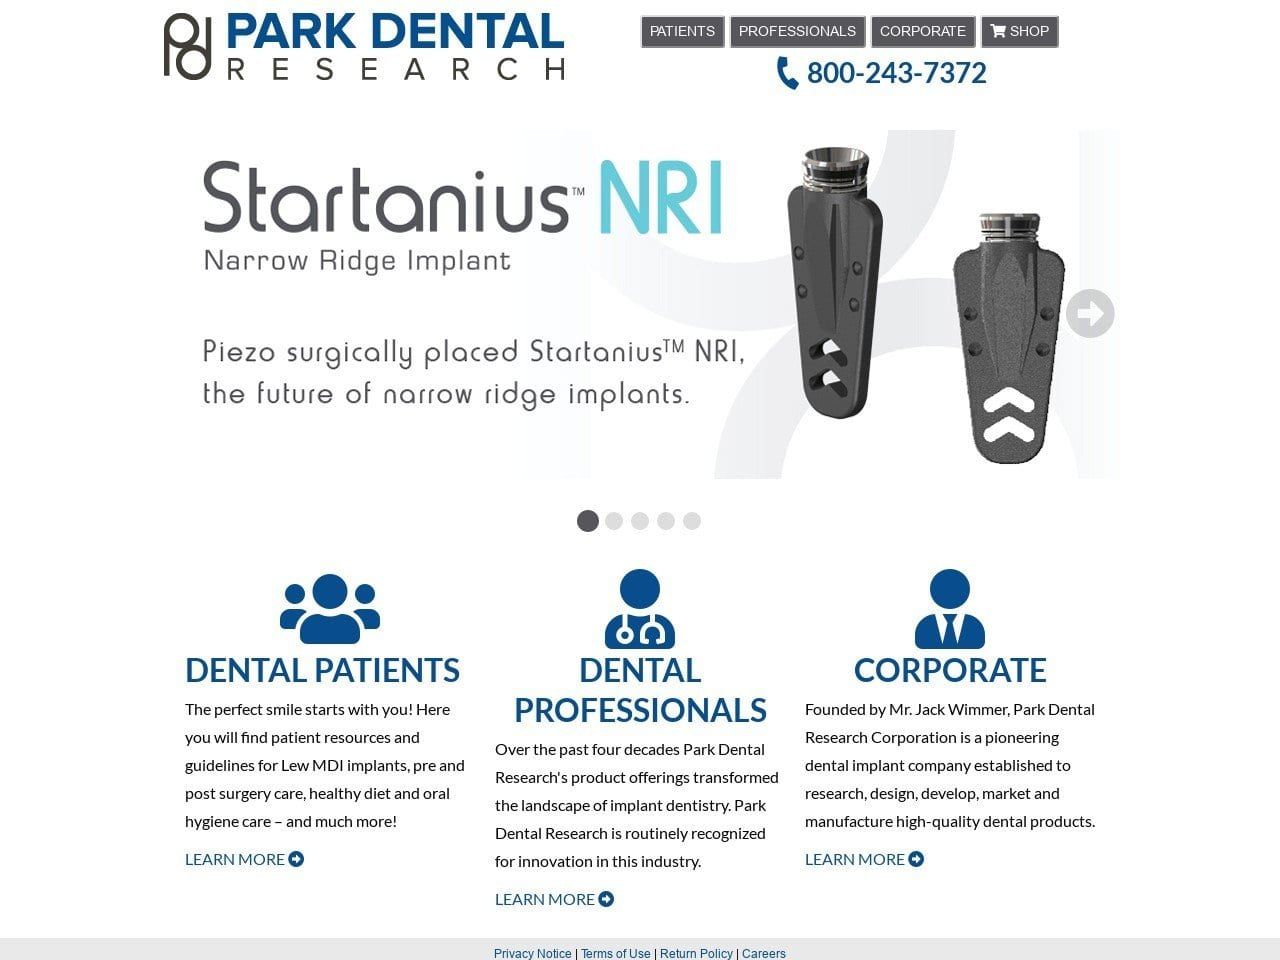 Park Dental Research Corporation Website Screenshot from parkdentalresearch.com